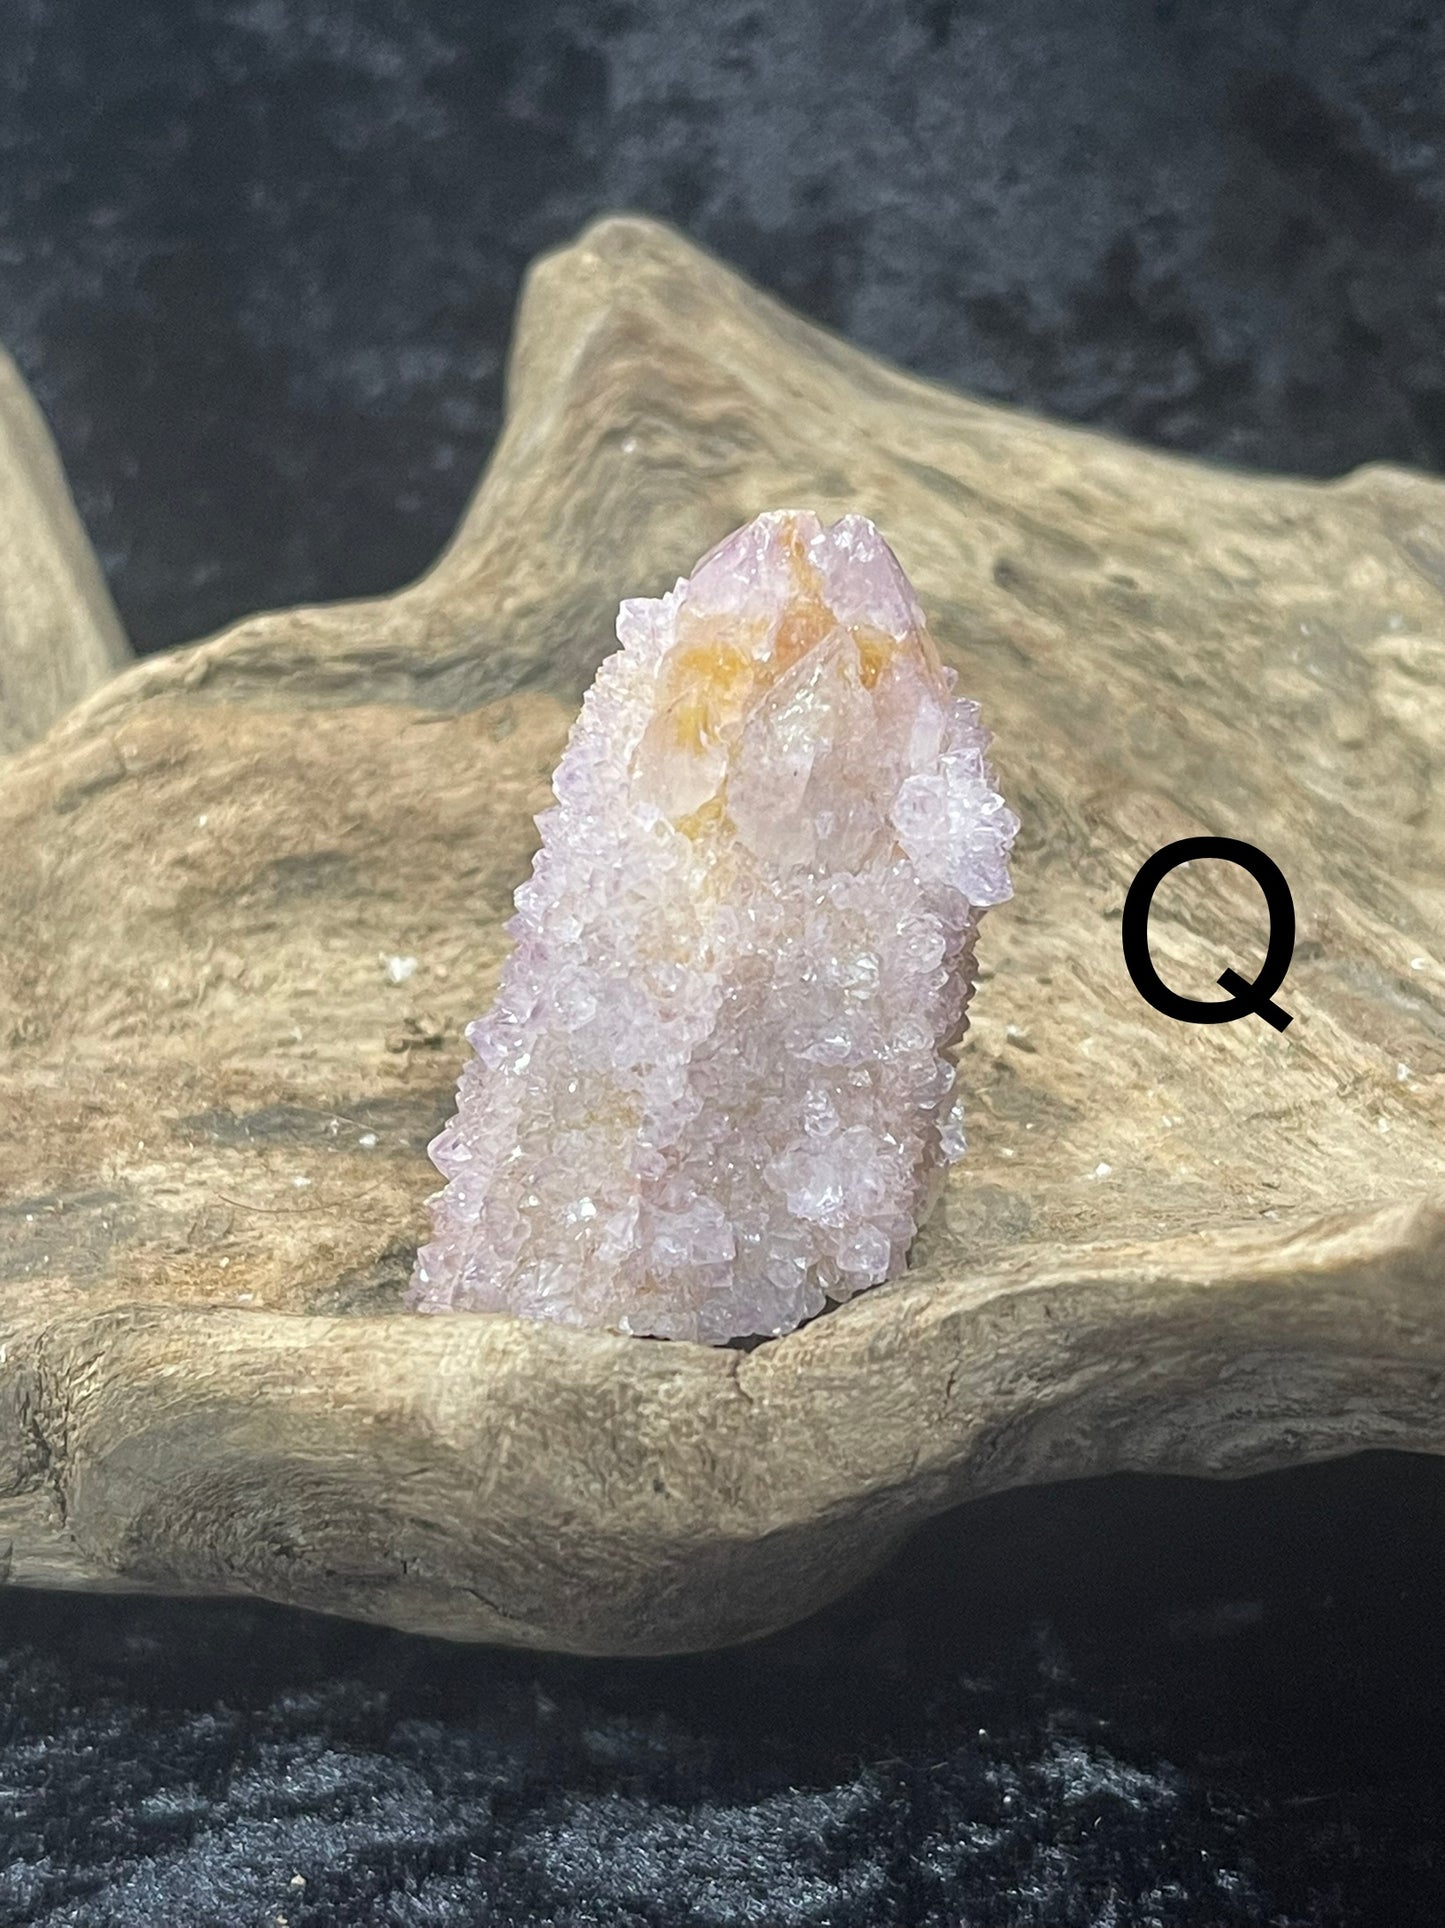 Spirit quartz